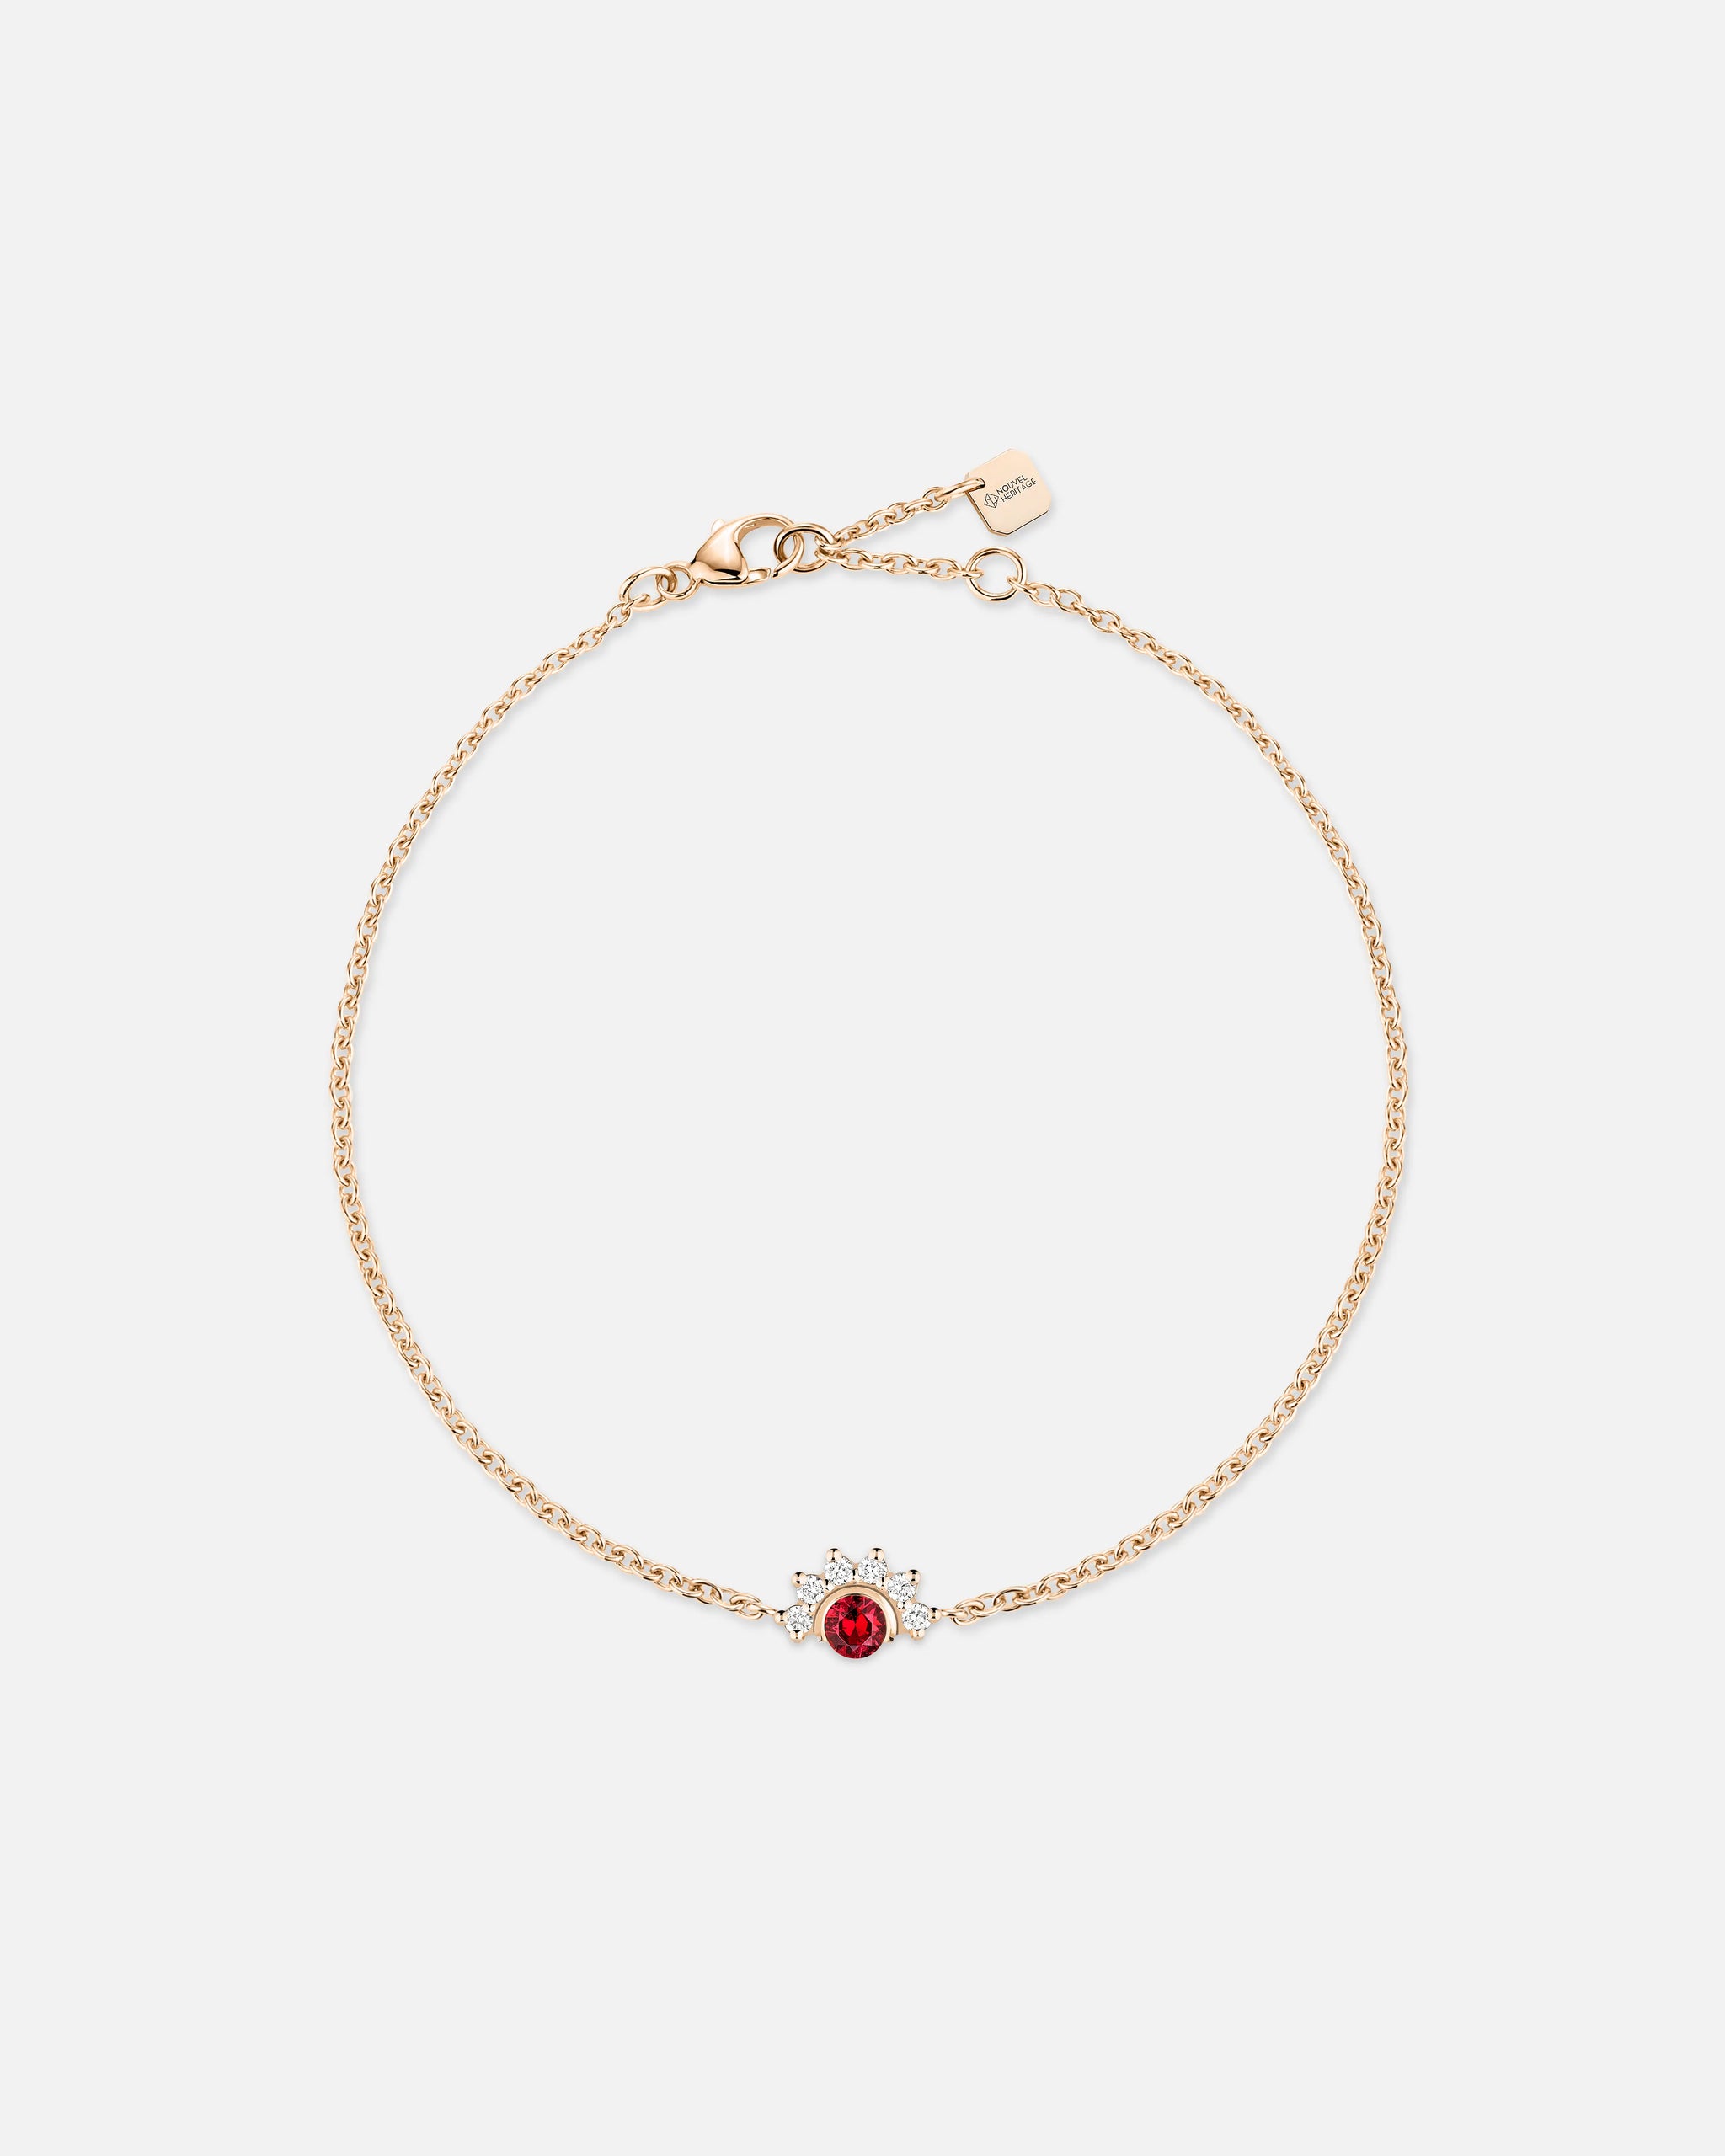 Red Spinel Bracelet in Rose Gold - 1 - Nouvel Heritage